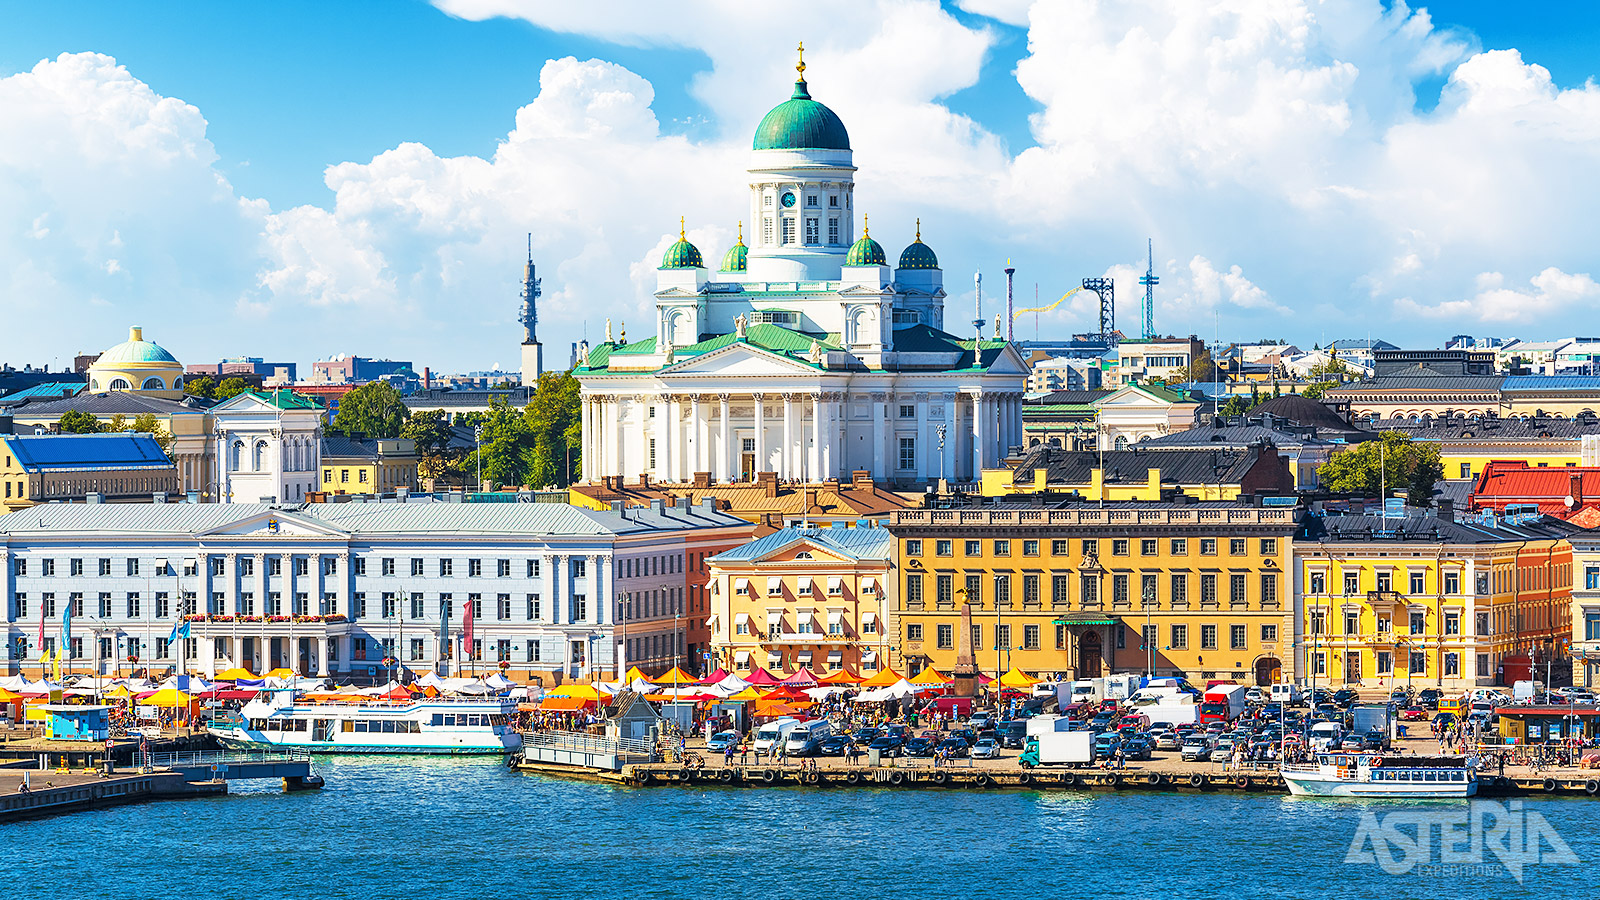 De Lutherse kathedraal, gelegen aan het water, is één van de opvallendste bezienswaardigheden van Helsinki